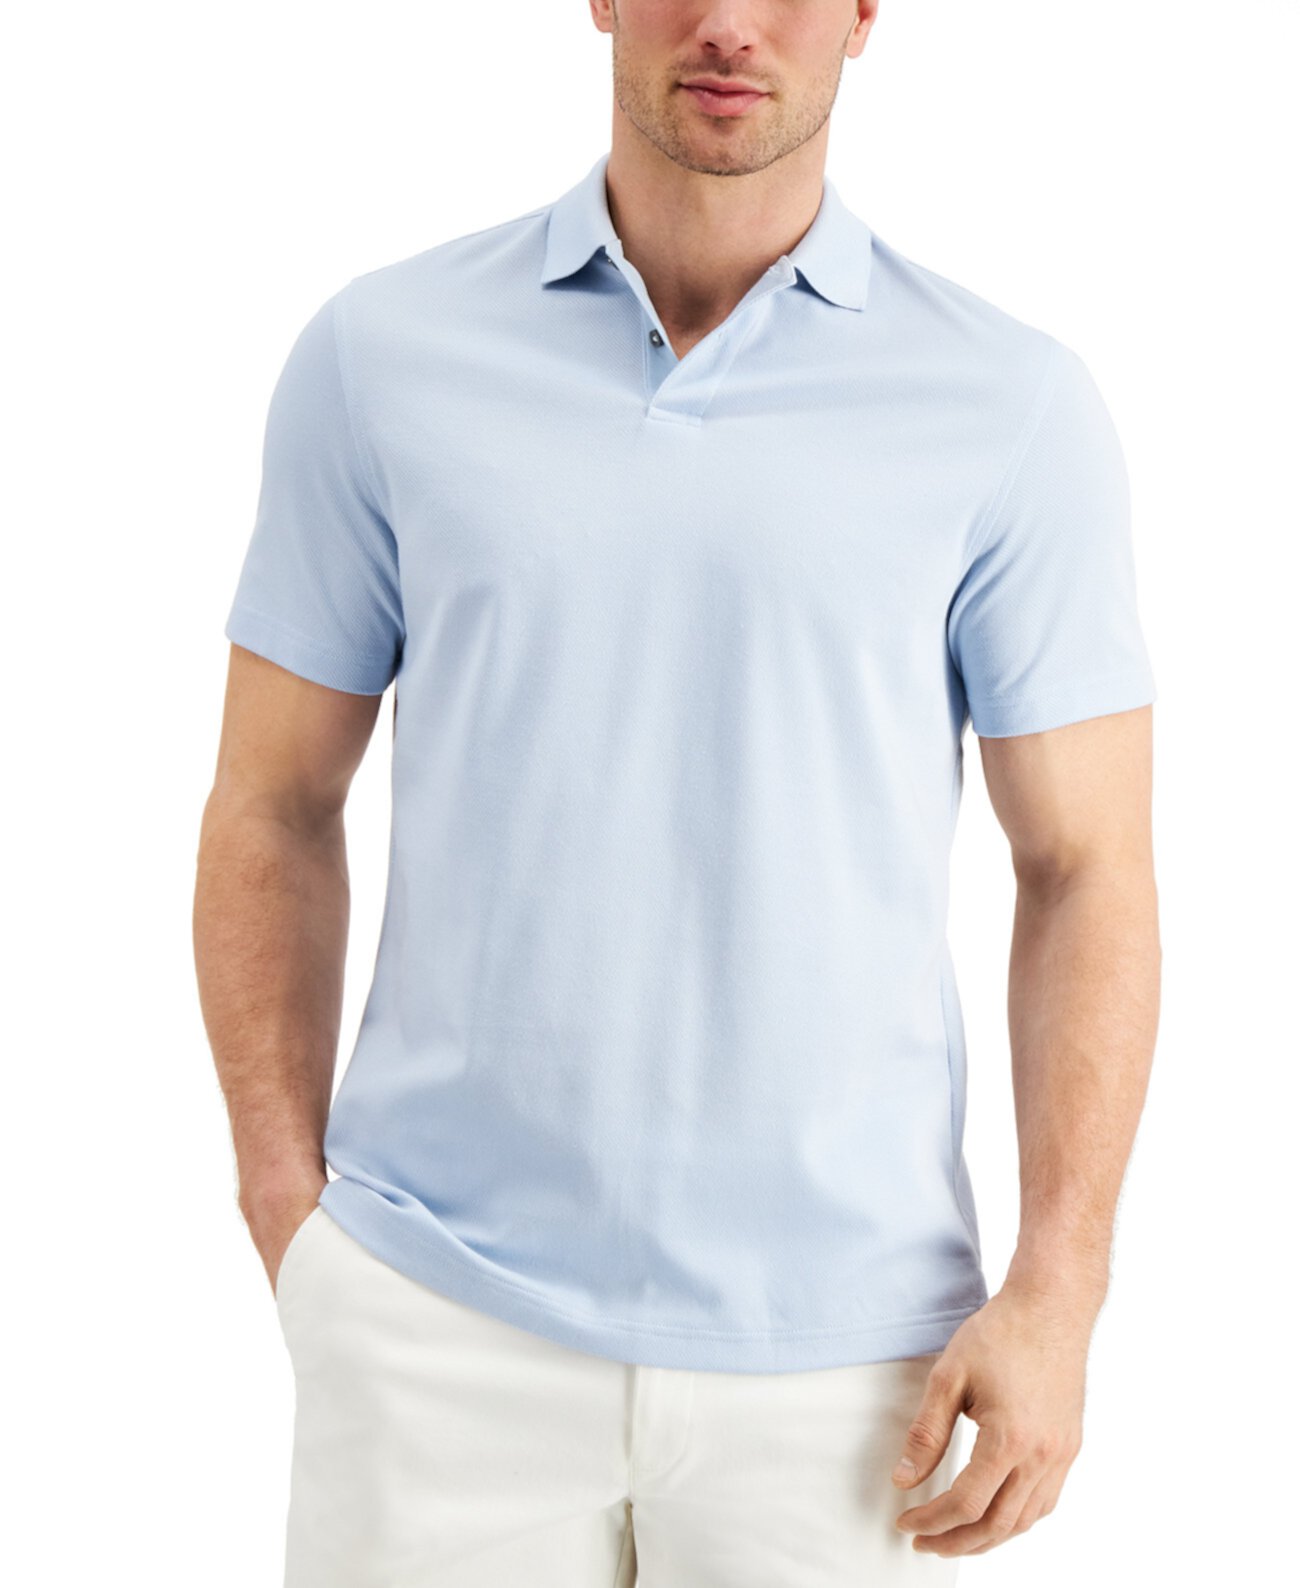 Мужская футболка-поло из смесового хлопка Supima®, созданная для Macy's Tasso Elba